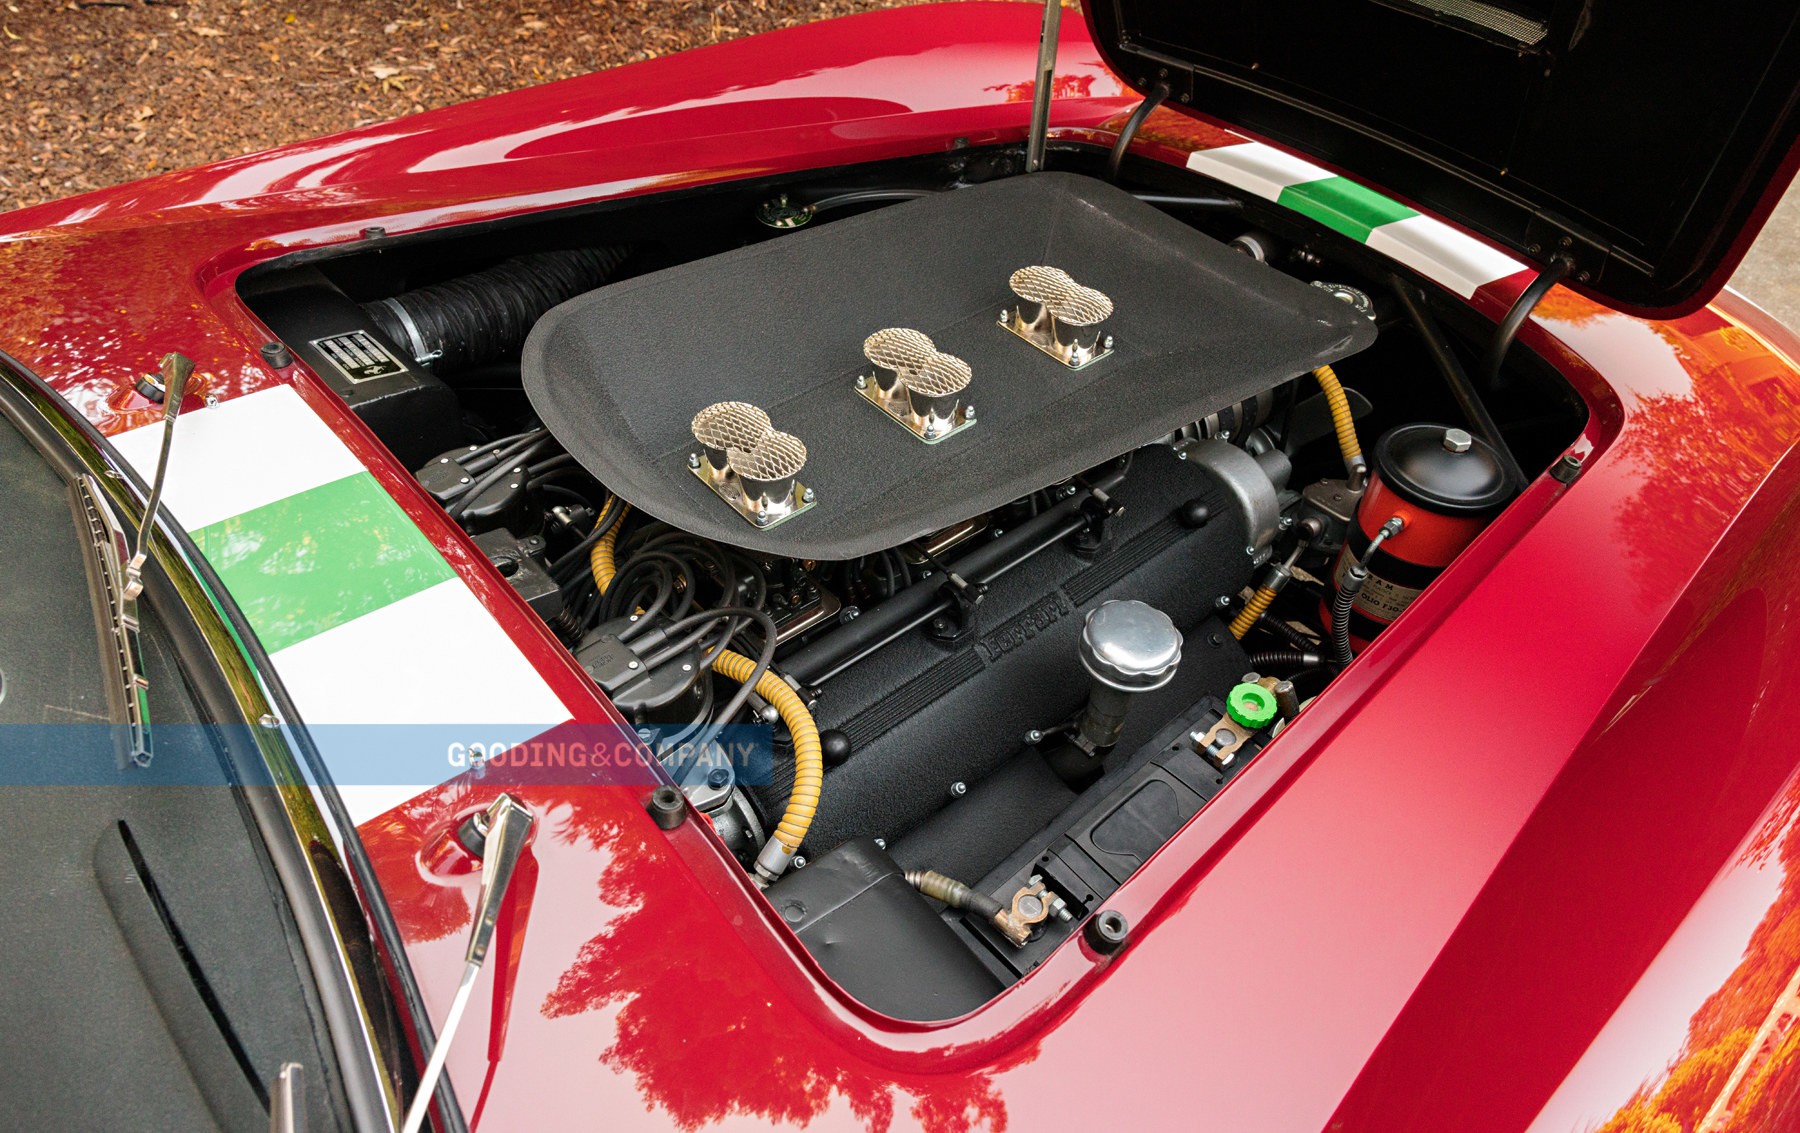 Ferrari California Spider Competizione 1959 — гоночный автомобиль Золотого века автоспорта